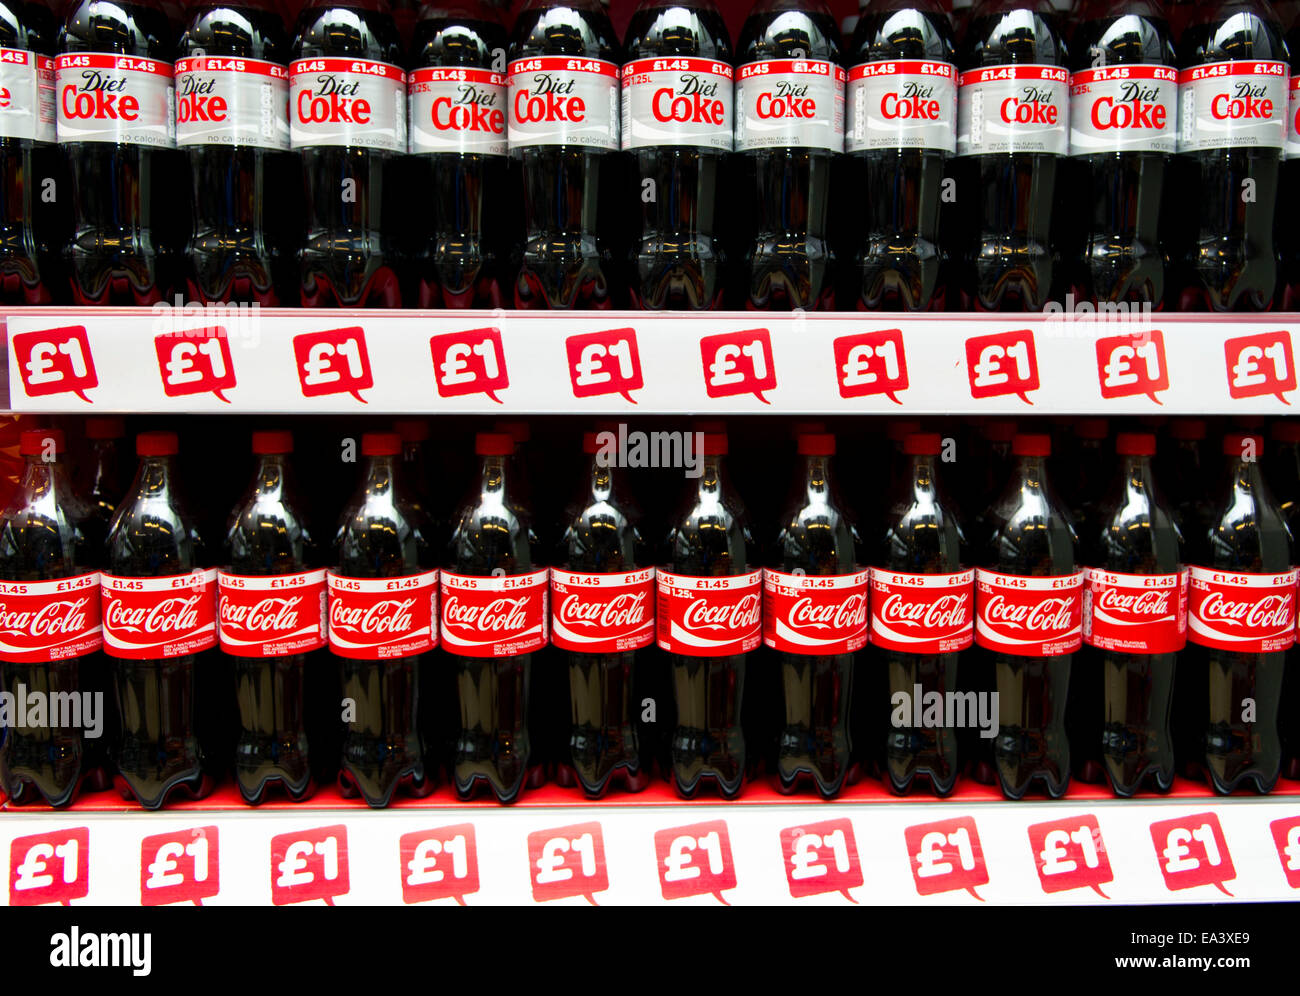 Coca cola coke bottiglie sul display in un supermercato shop per £1 Foto Stock